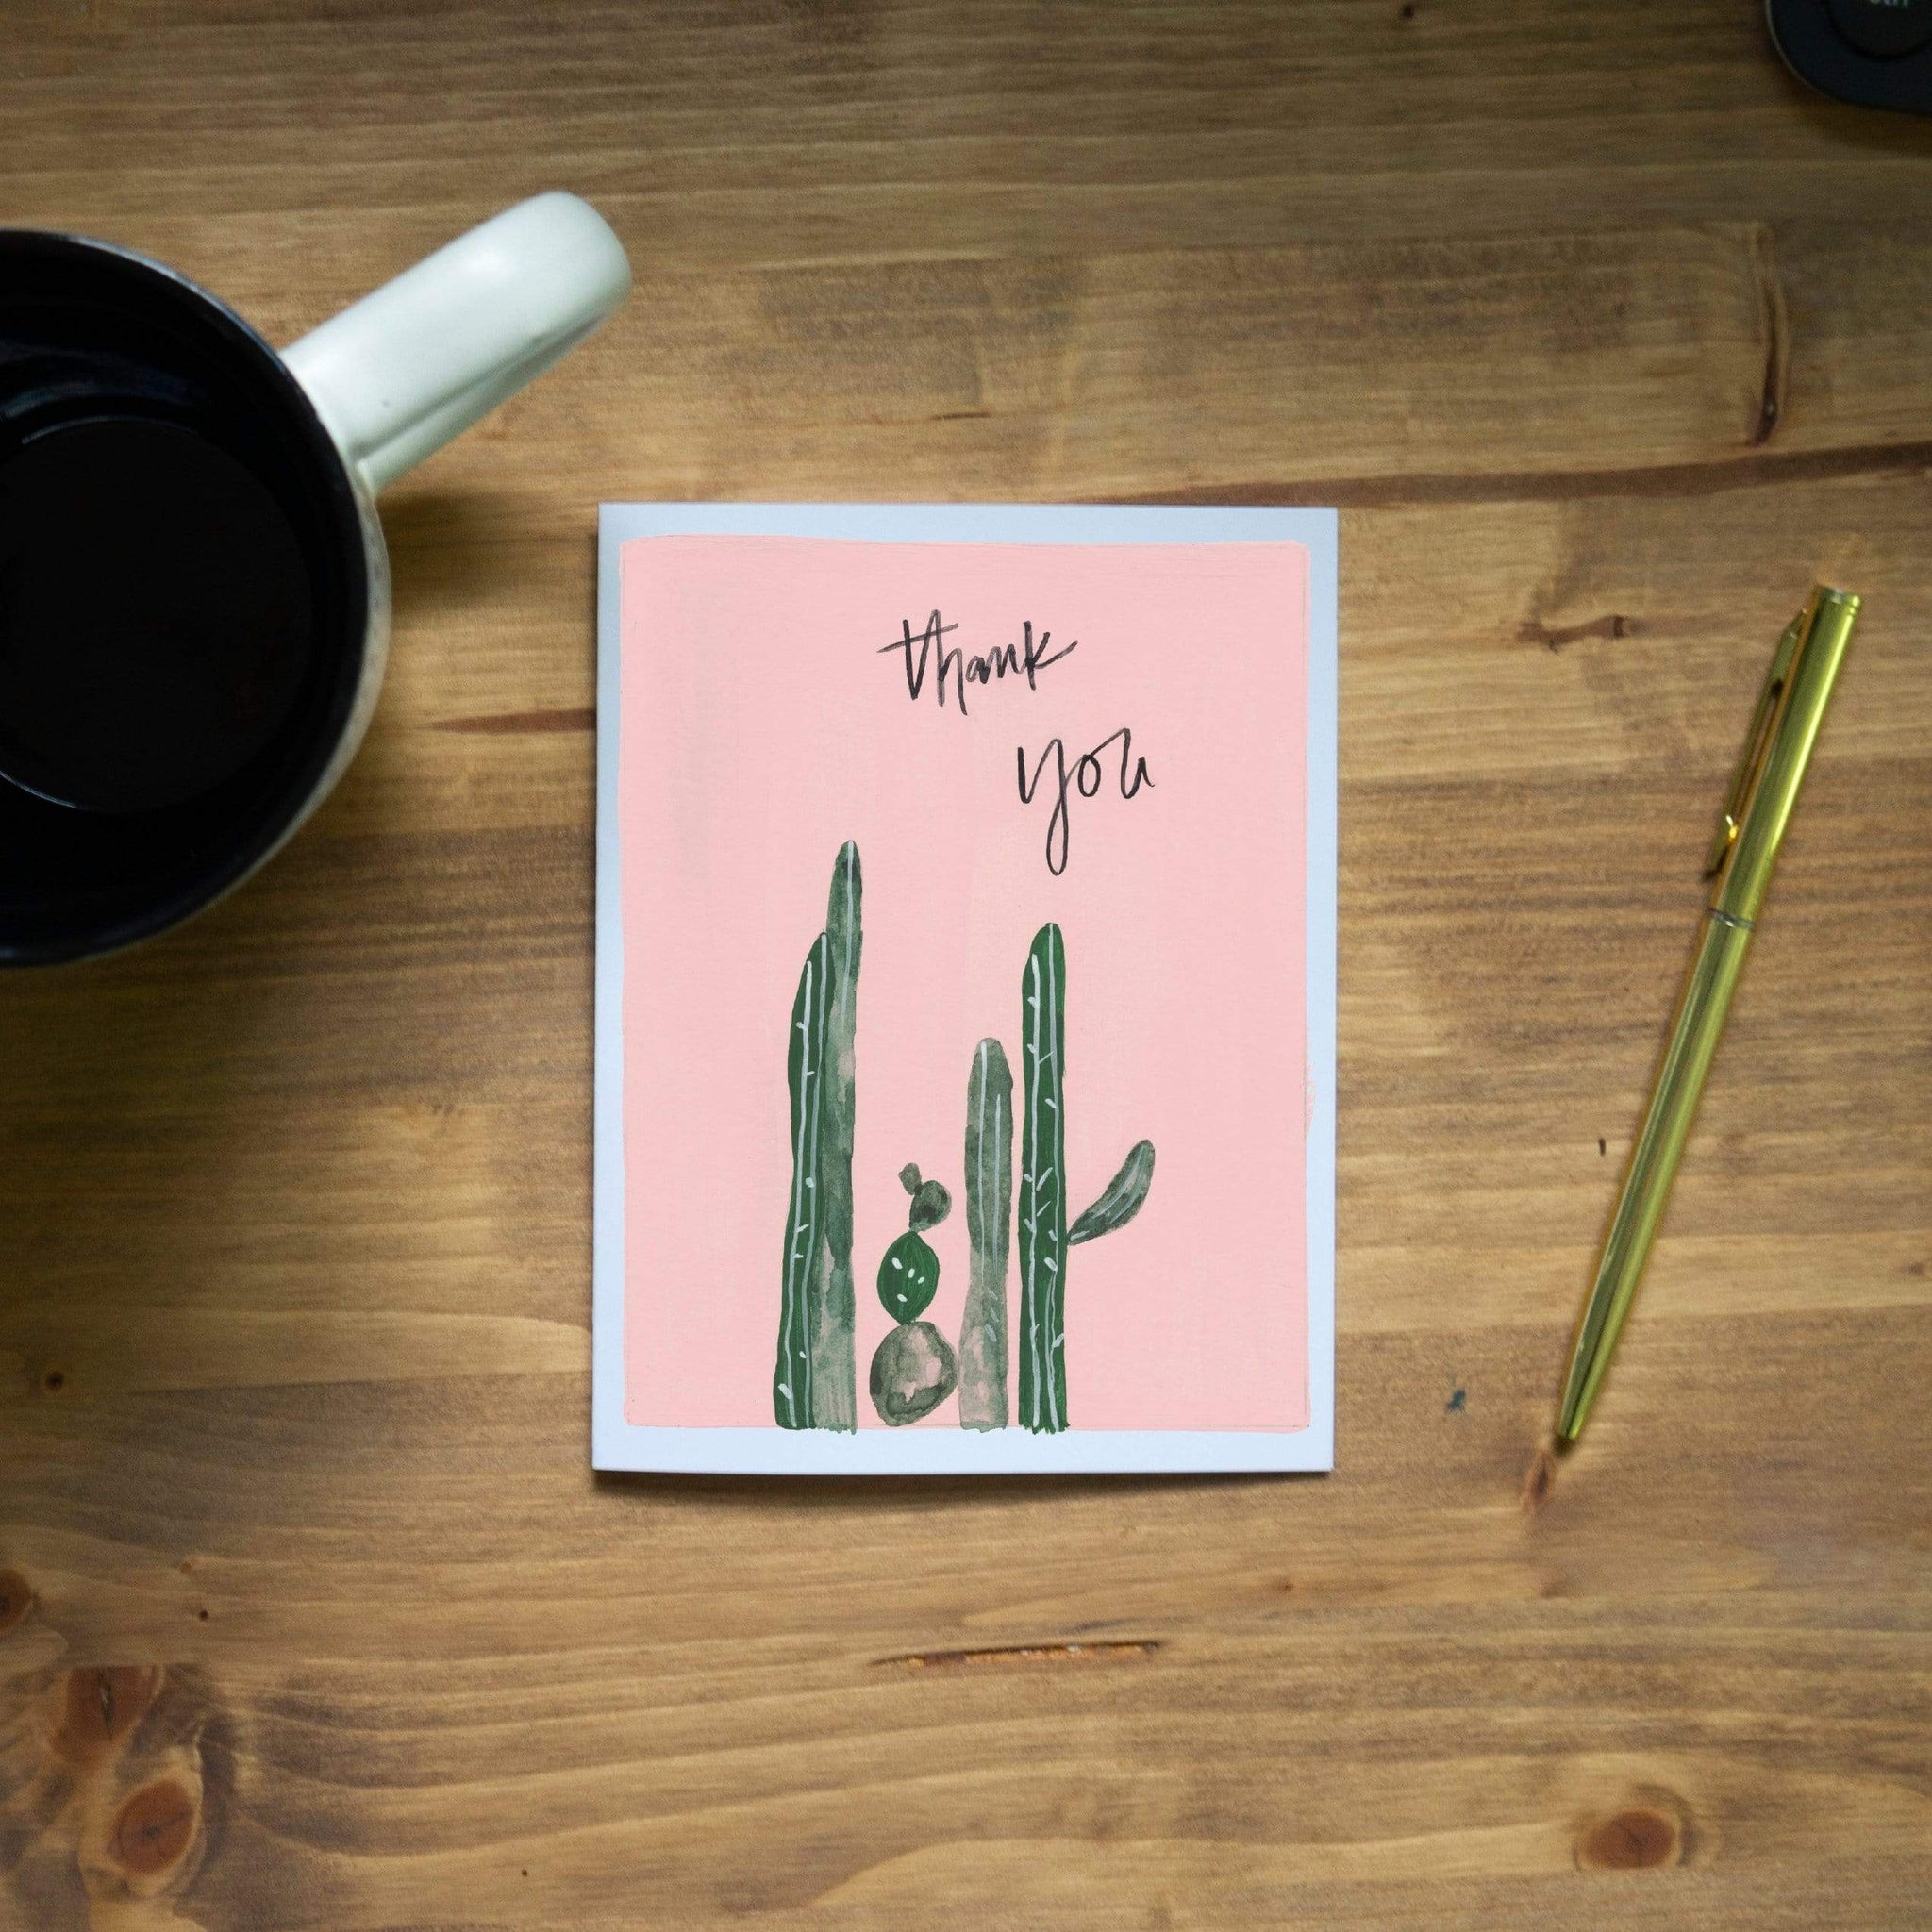 Pen + Pillar Card Pink Cactus Thank You Card - Set of 8